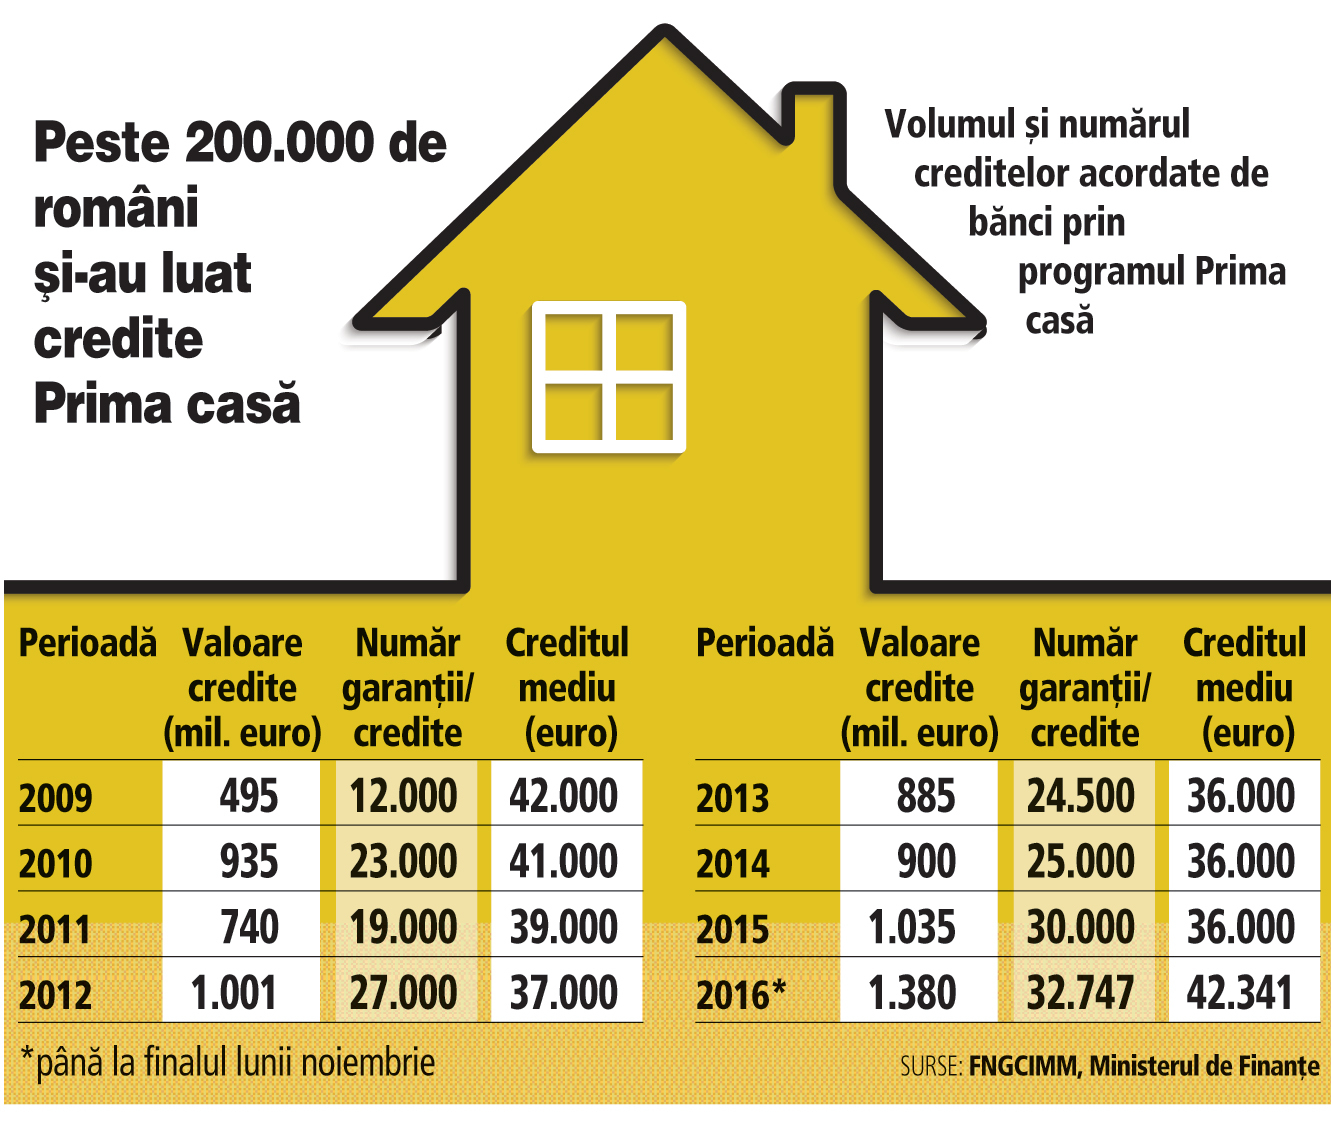 Bilanţul programului Prima casă după 8 ani de funcţionare: garanţii de 4 mld. euro şi peste 203.000 de credite în valoare de 8 mld. euro. Peste 22.000 de români îşi vor putea achiziţiona o locuinţă prin programul Prima casă în 2017